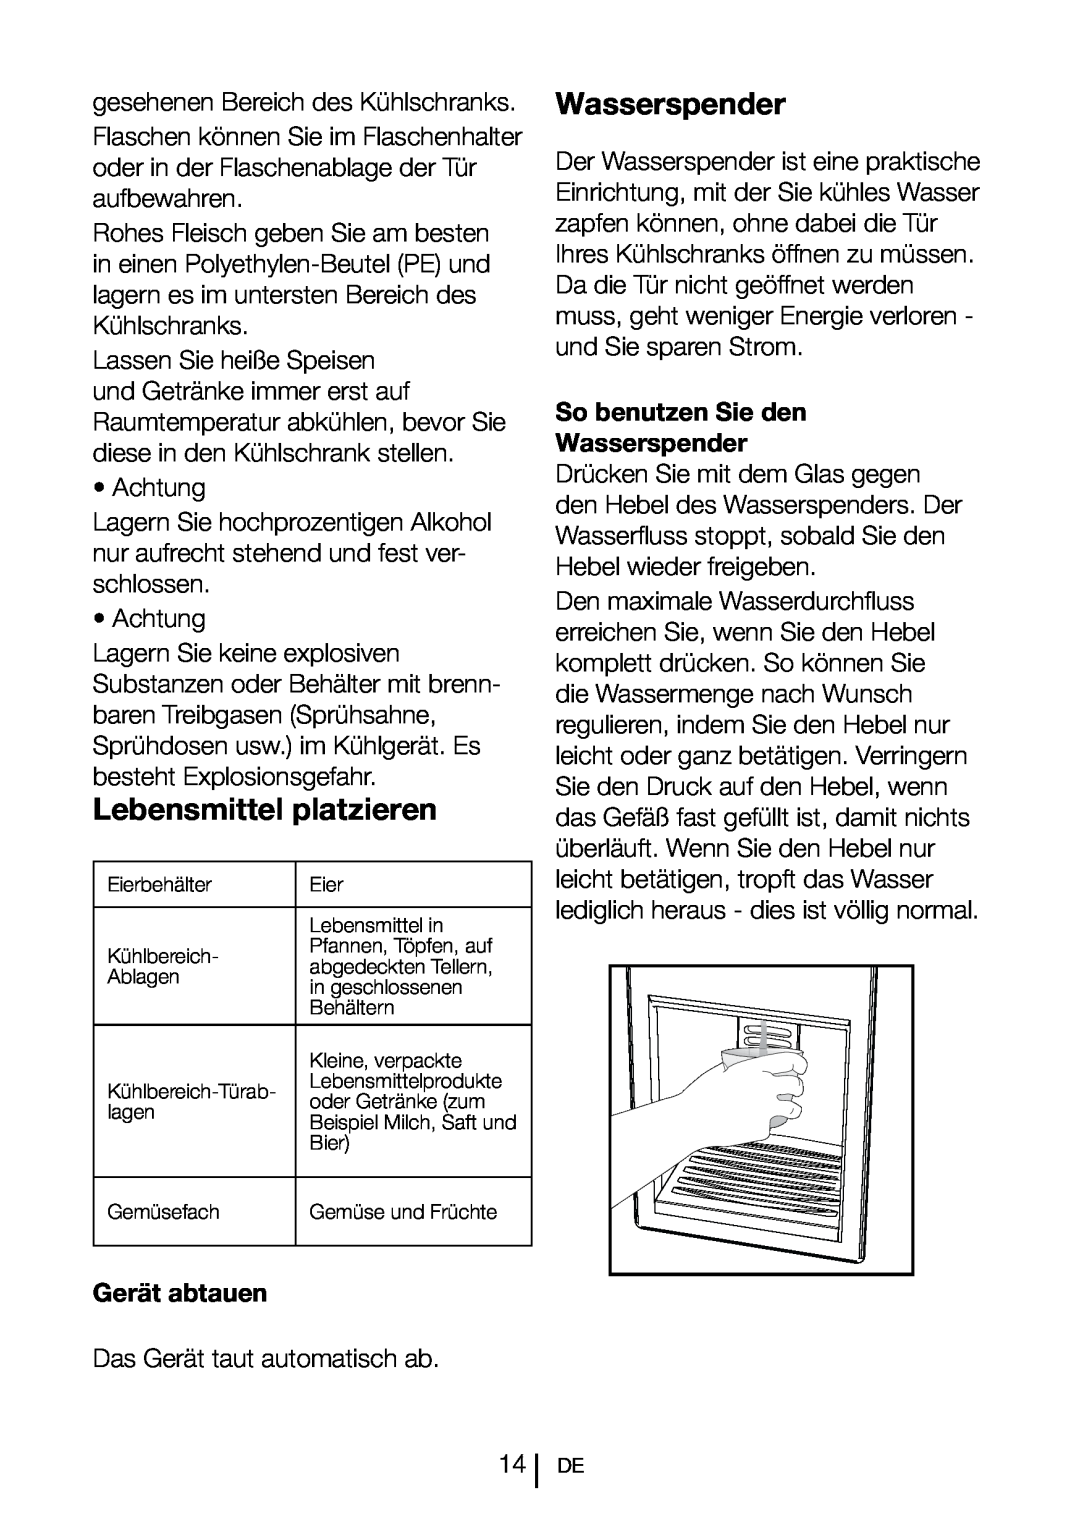 Blomberg SND 9681 XD operating instructions Lebensmittel platzieren, Gerät abtauen, So benutzen Sie den Wasserspender 